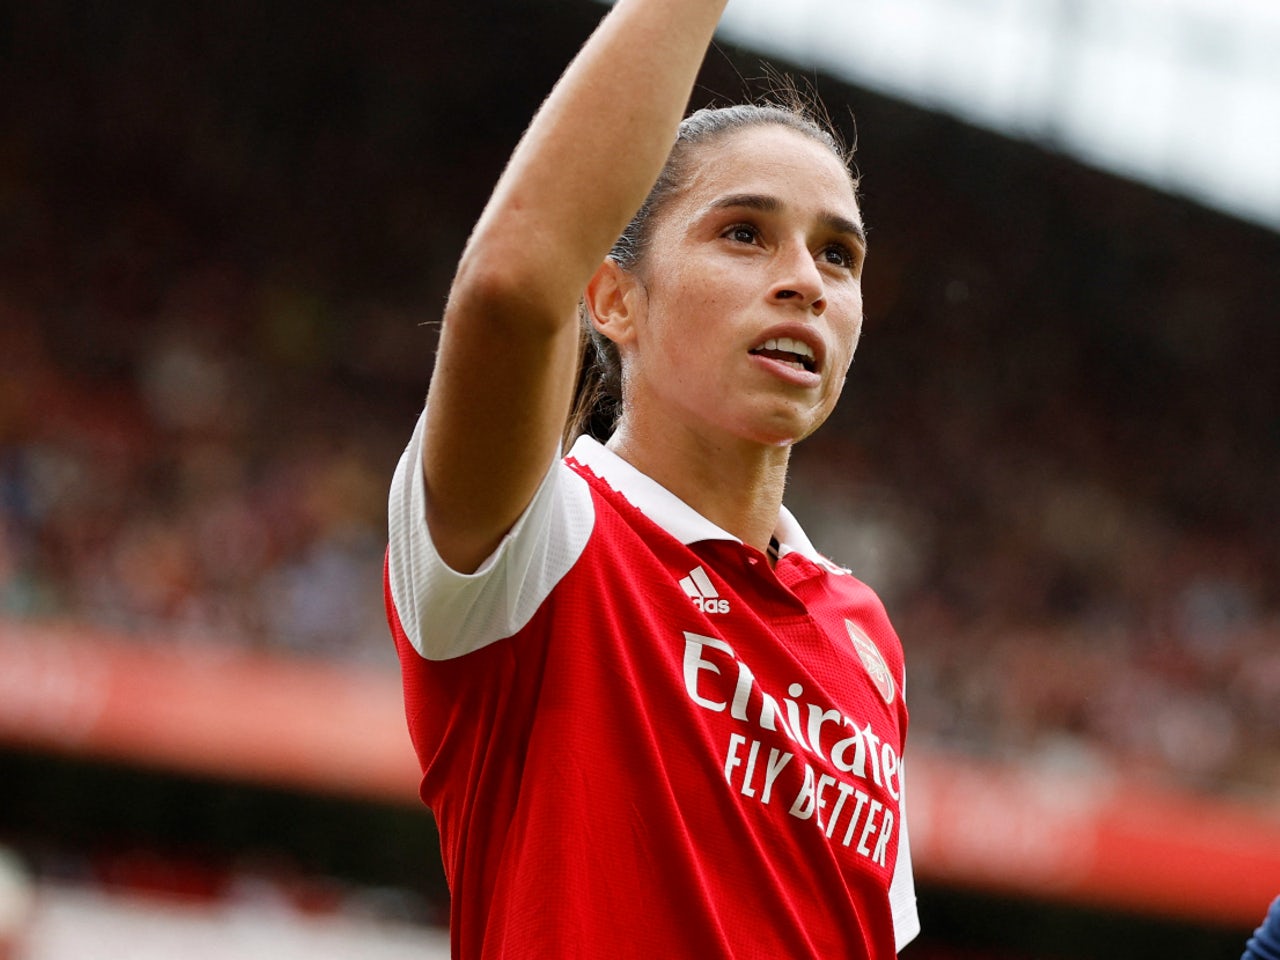 Arsenal's Rafaelle Souza out for 